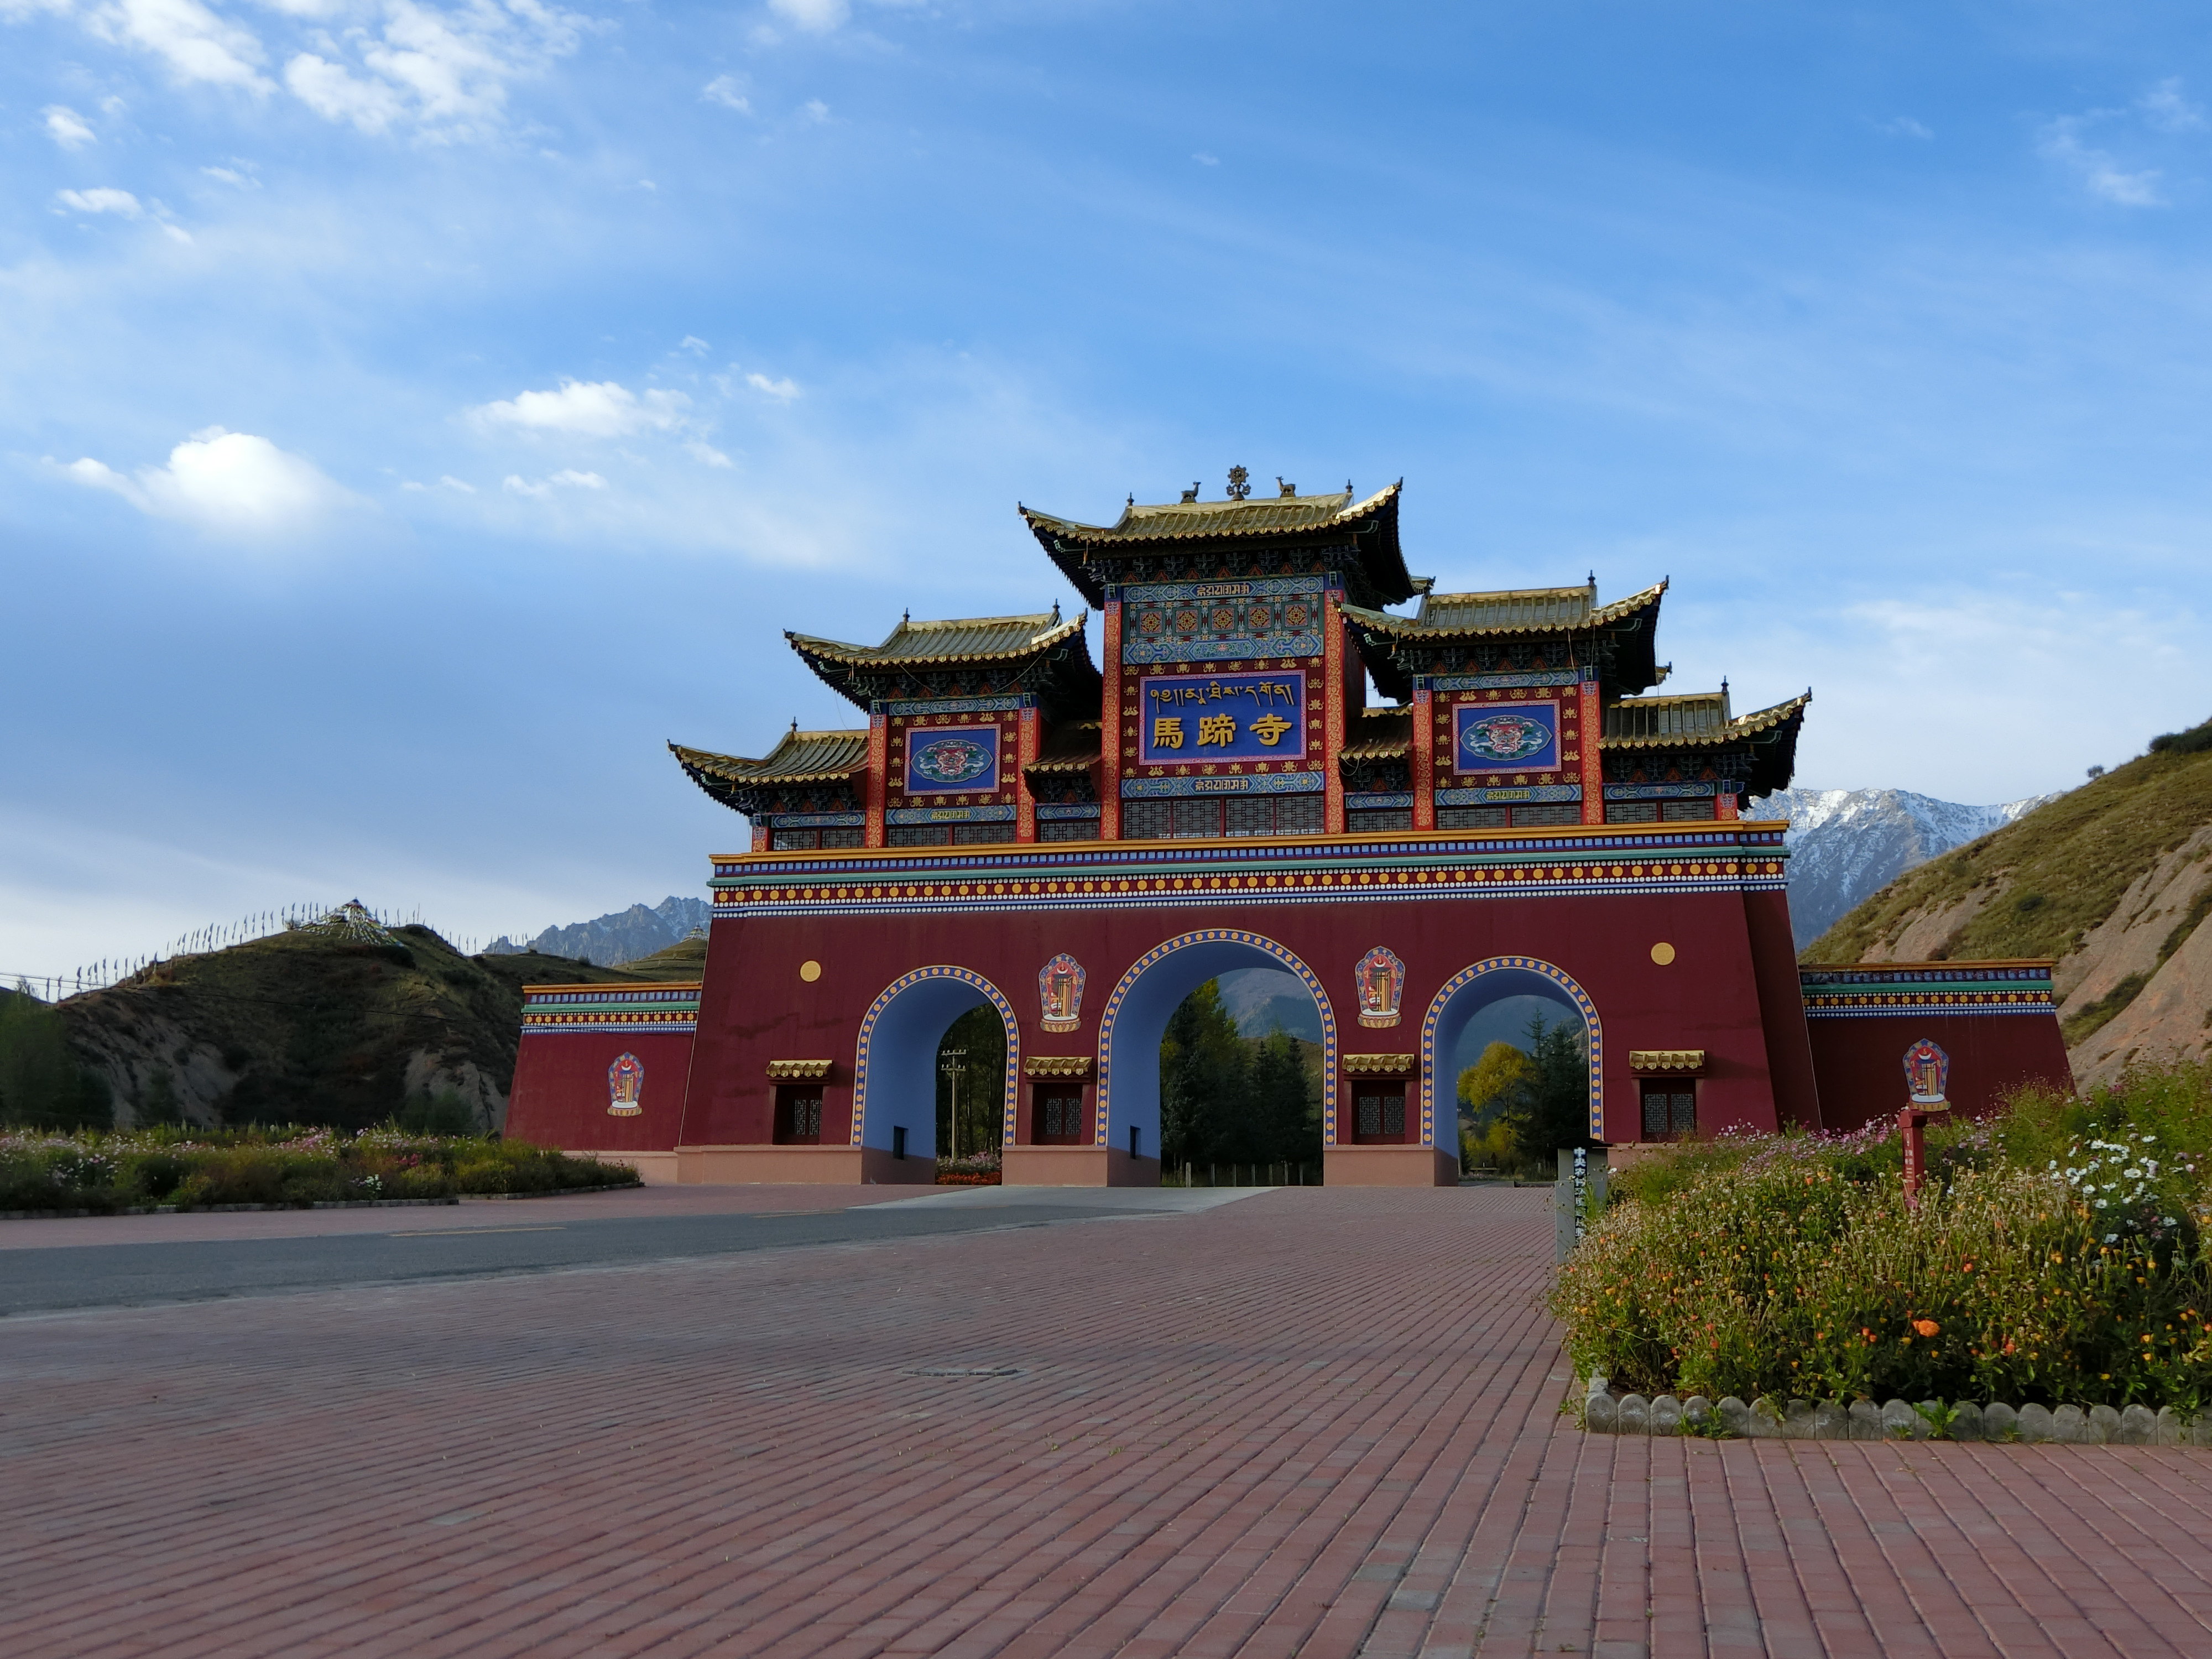 【携程攻略】张掖马蹄寺景点,马蹄寺位于肃南的裕固族自治州,主要是